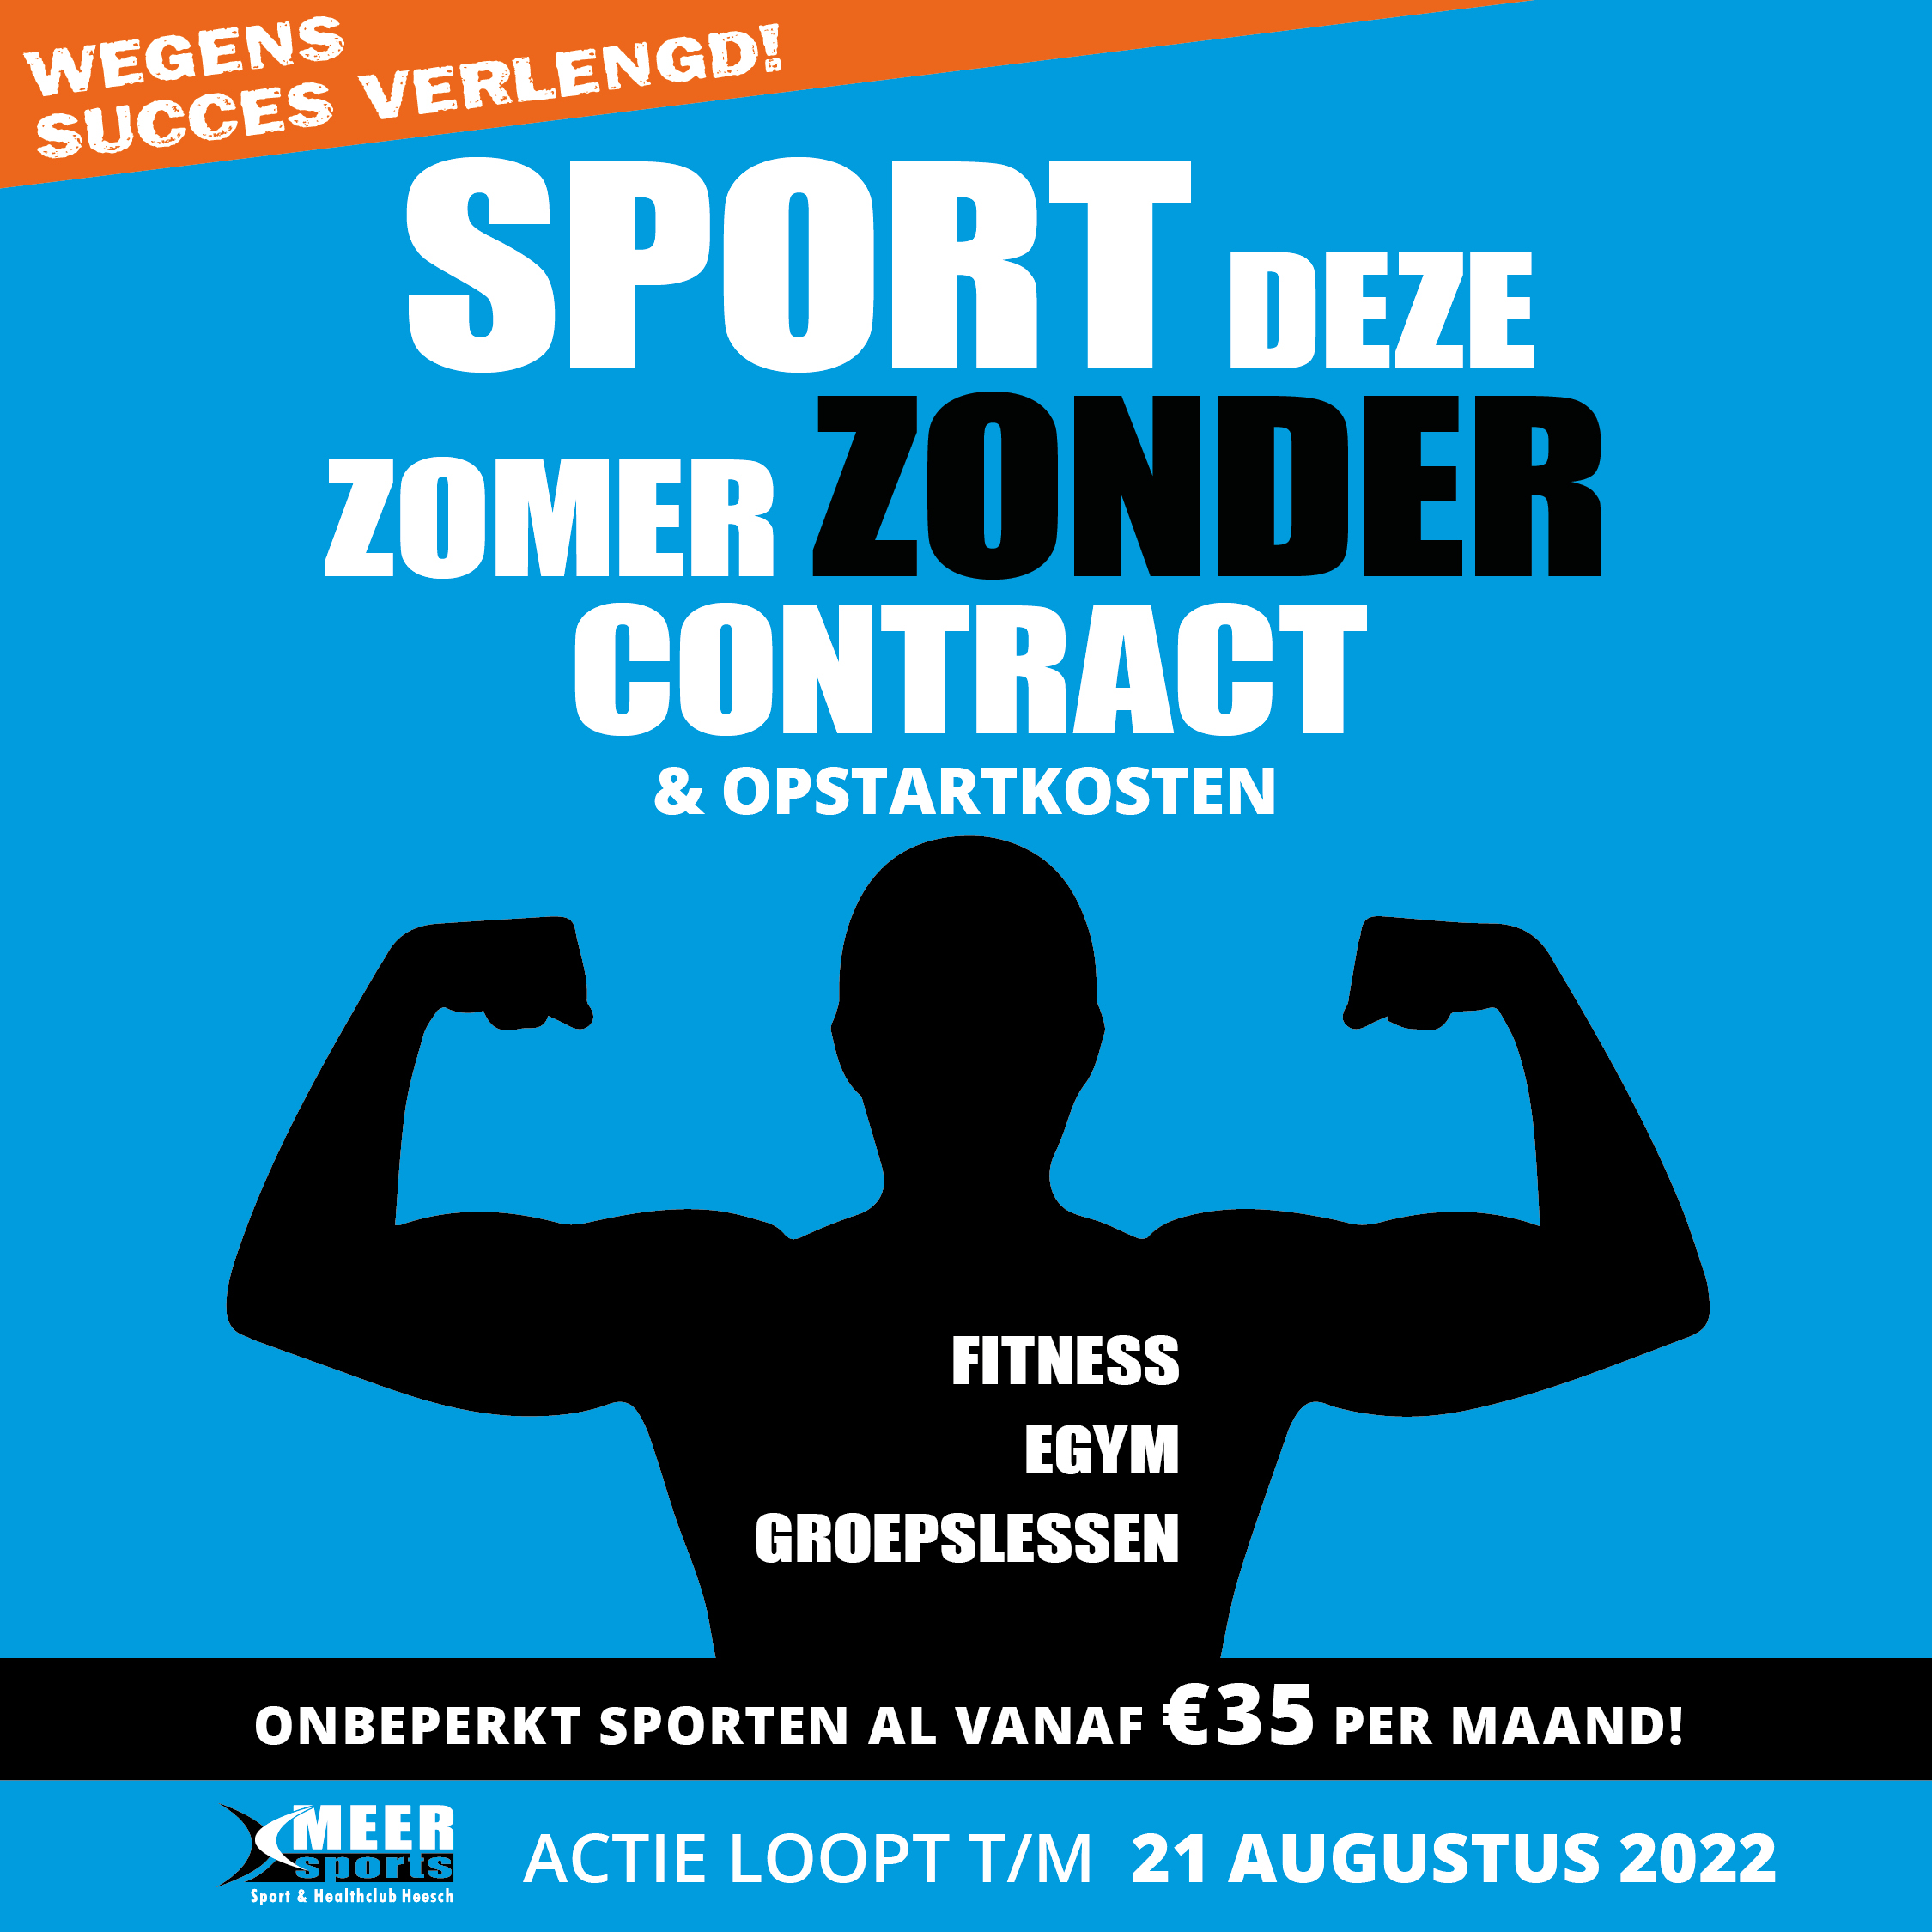 Sport deze zomer zonder contract - Actie loopt t/m 21 augustus 2022 - Meer Sports Heesch